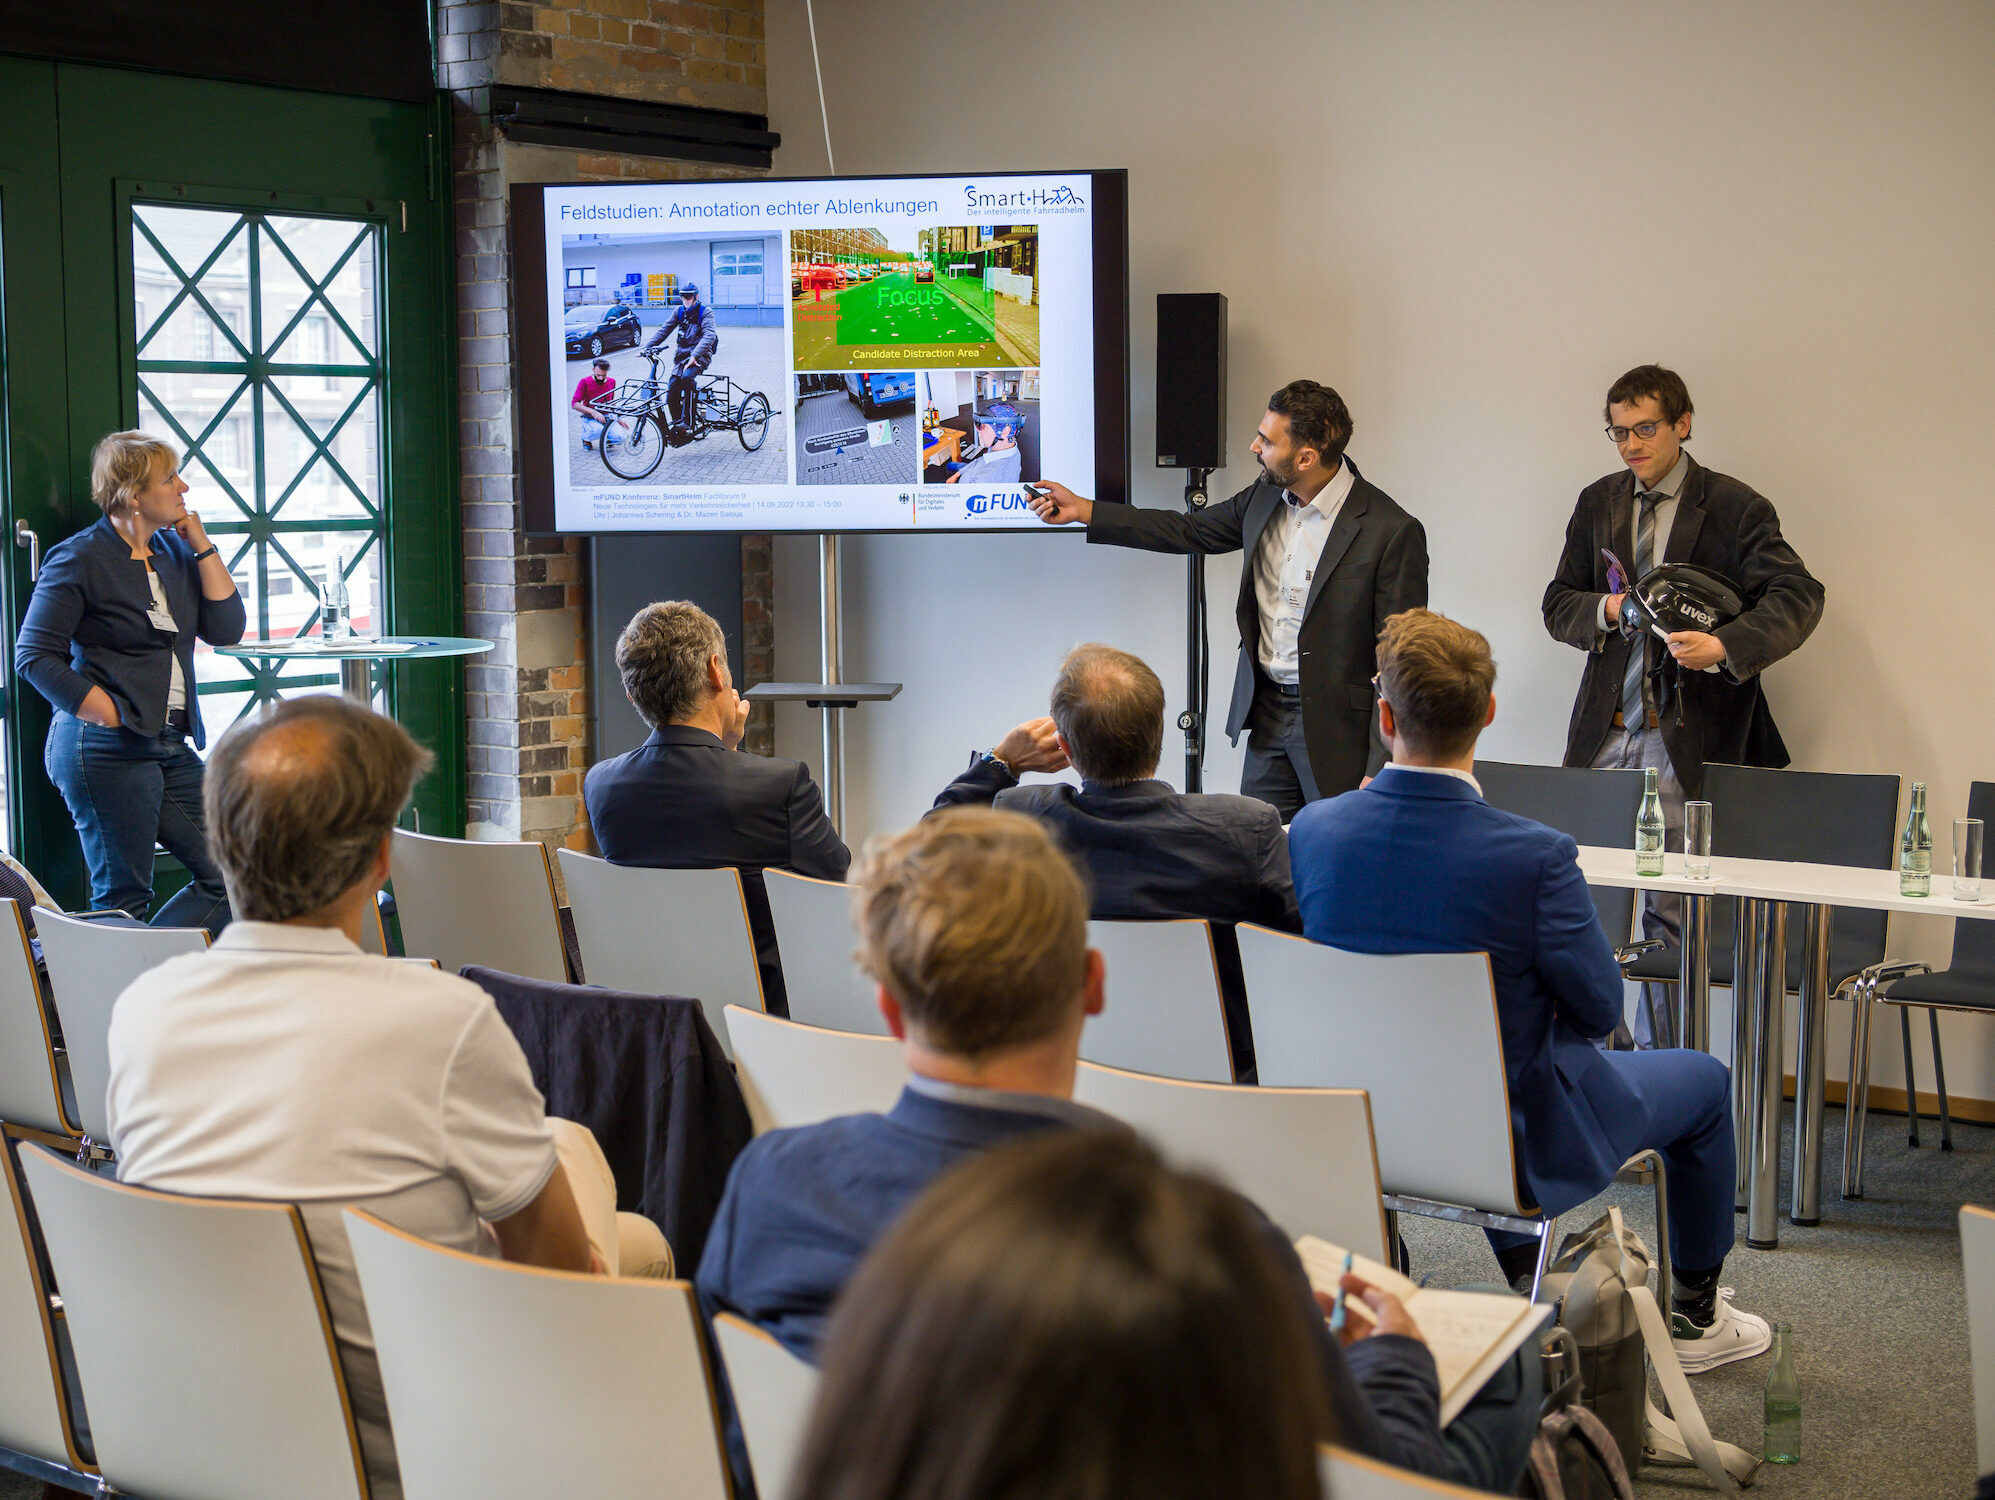 Neben einem großen Bildschirm stehen zwei Männer und erklären ihr Projekt SmartHelm dem Publikum im Raum